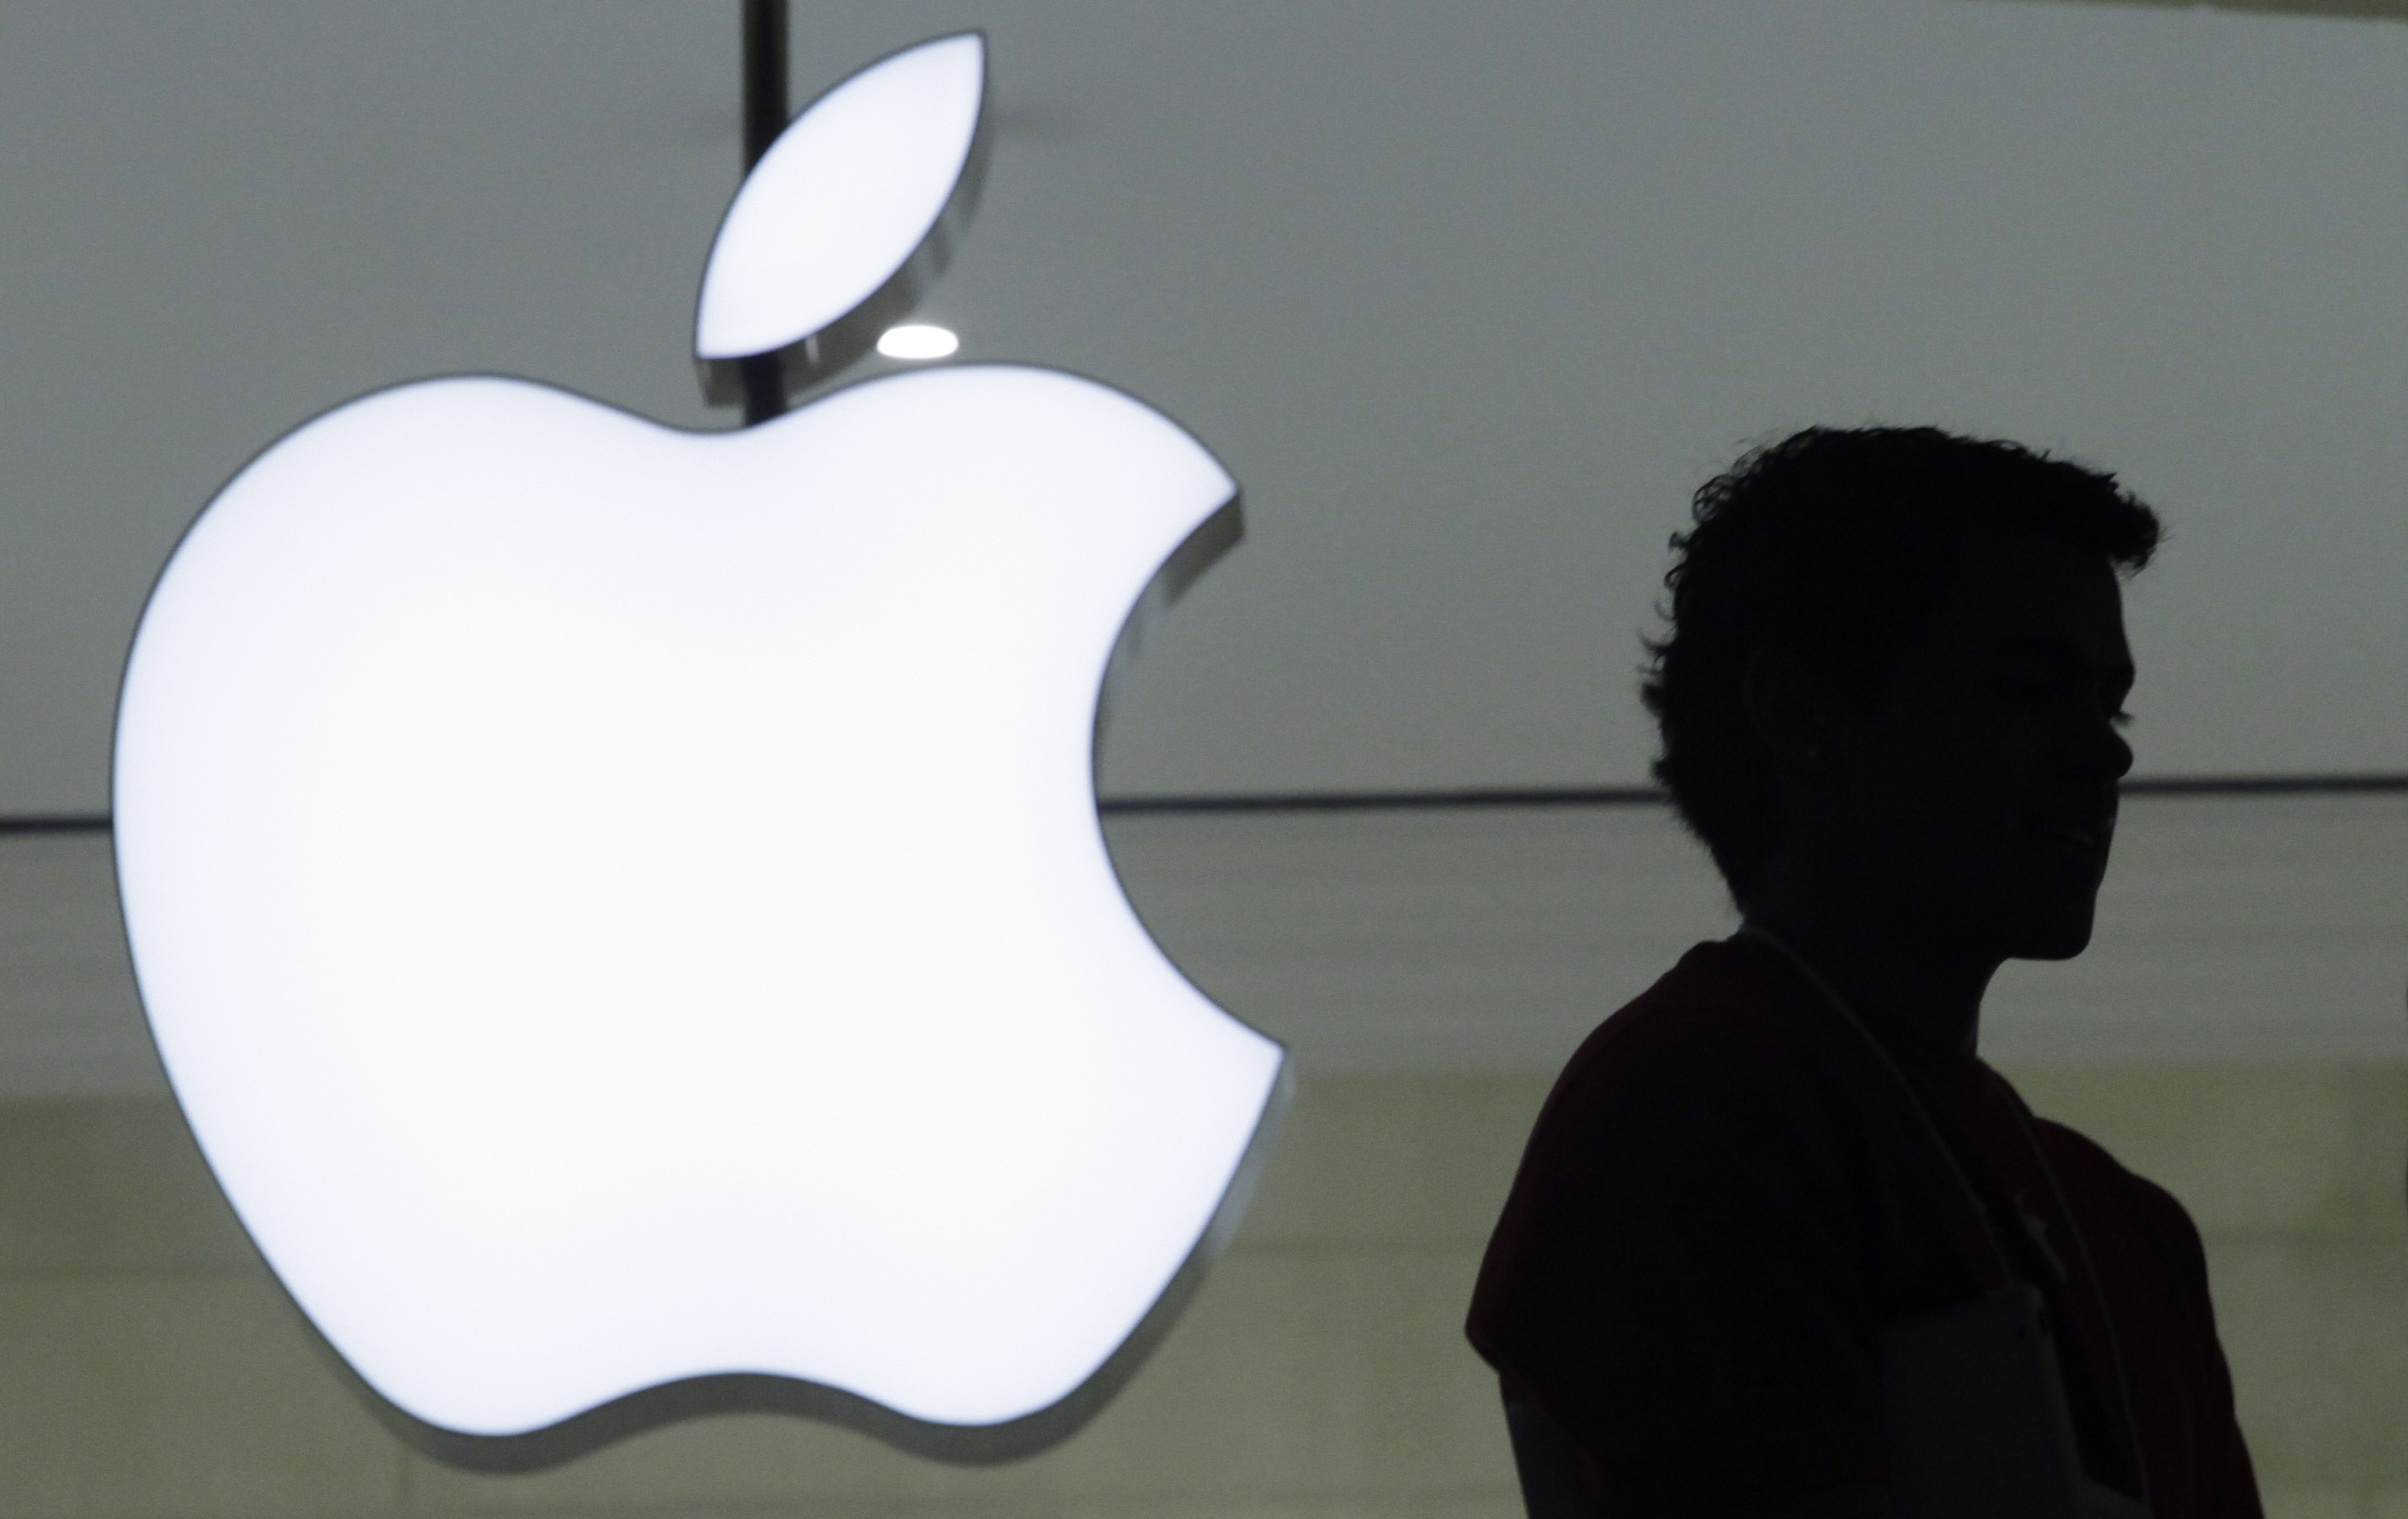 Apple cierra su ao fiscal con unas ganancias de 81.036 millones aupado por el iPhone y los servicios